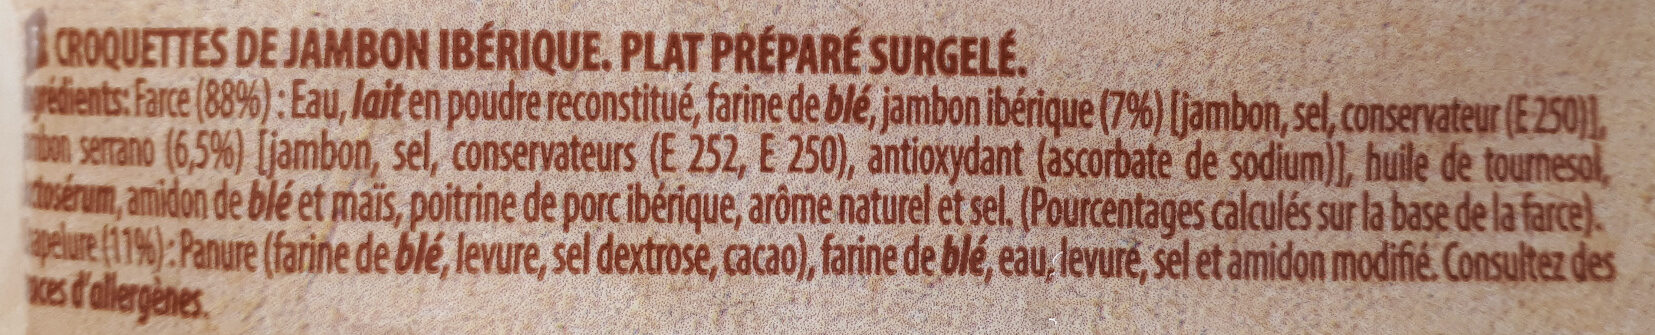 Croquetas de Jamon Ibérico - Ingredients - fr